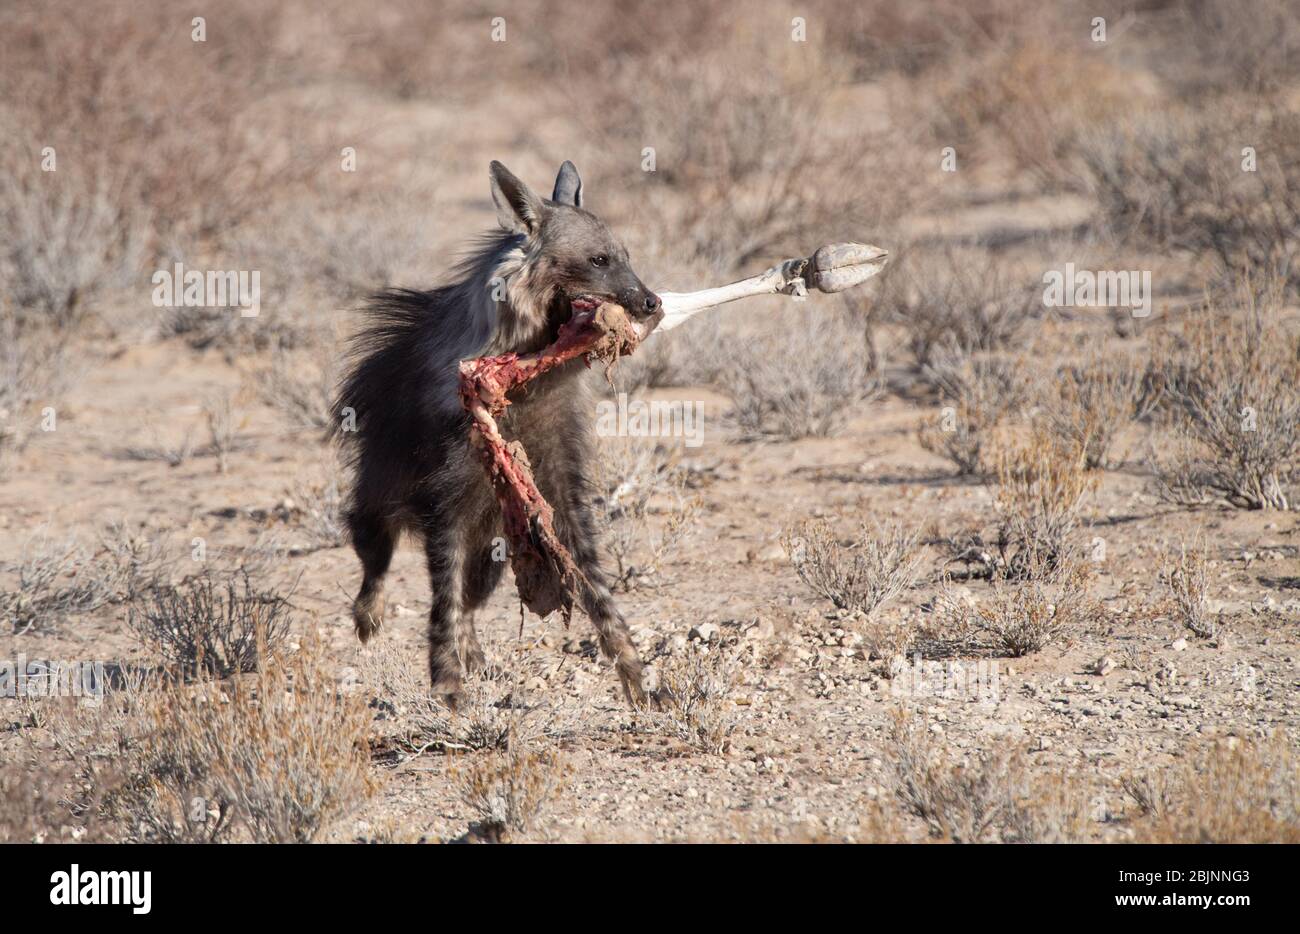 Hyena marrón corriendo con una pierna de oryx en su boca, Sudáfrica Foto de stock